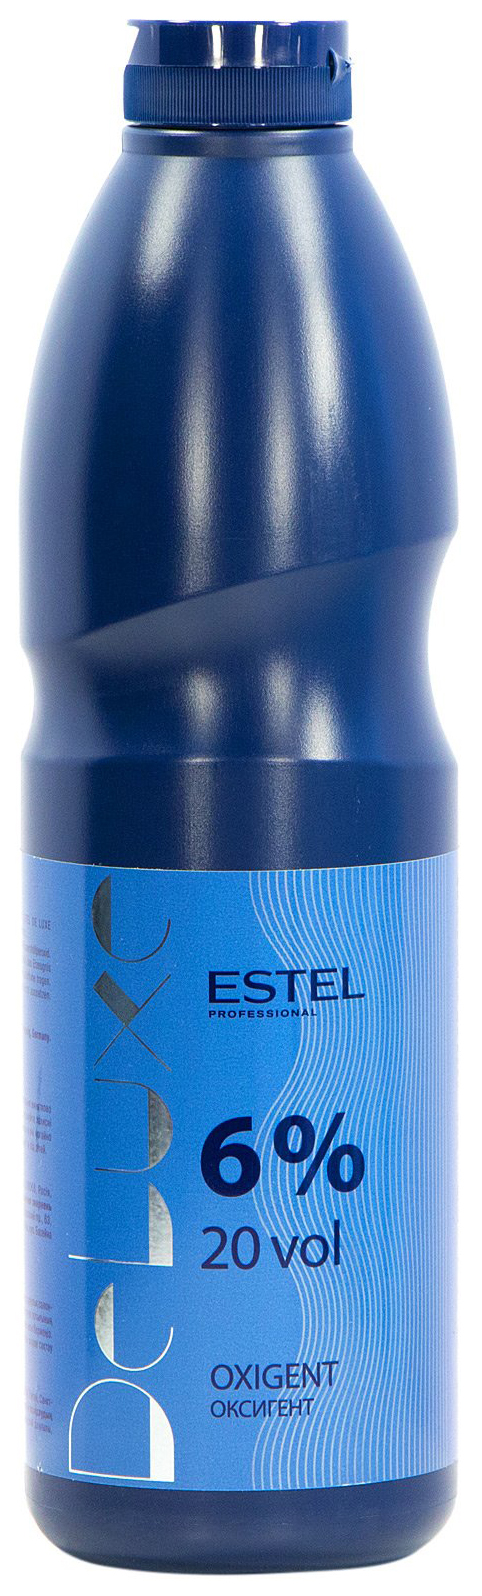 Проявитель Estel Professional De Luxe Oxigent 6% 900 мл проявитель ollin professional oxy 12% 1000 мл